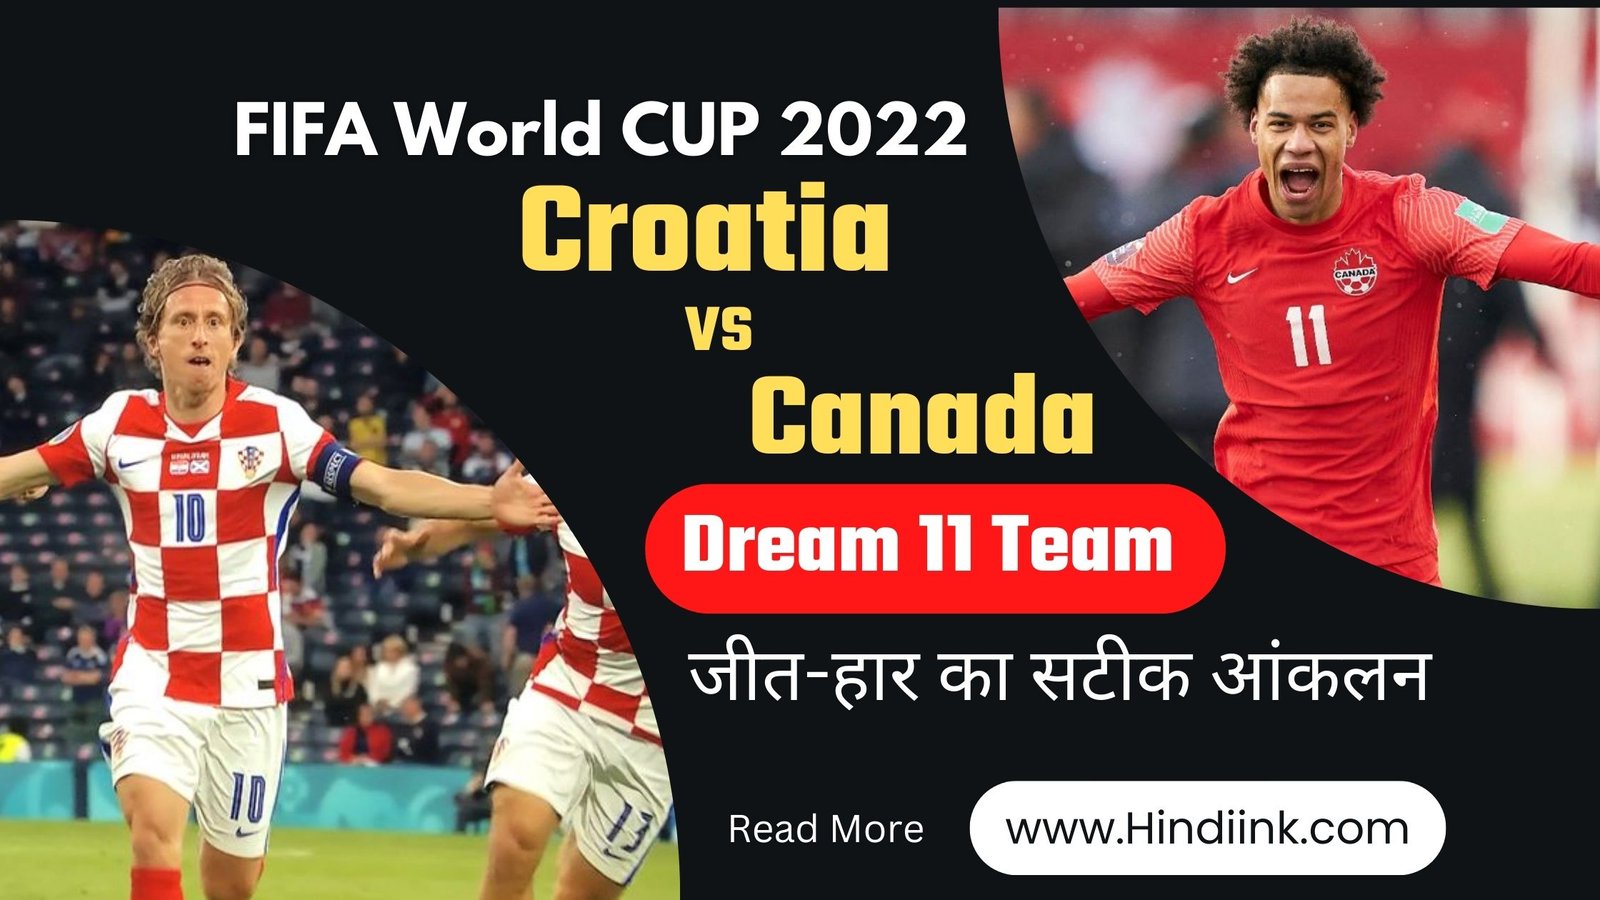 Croatia vs Canada Match Prediction in Hindi